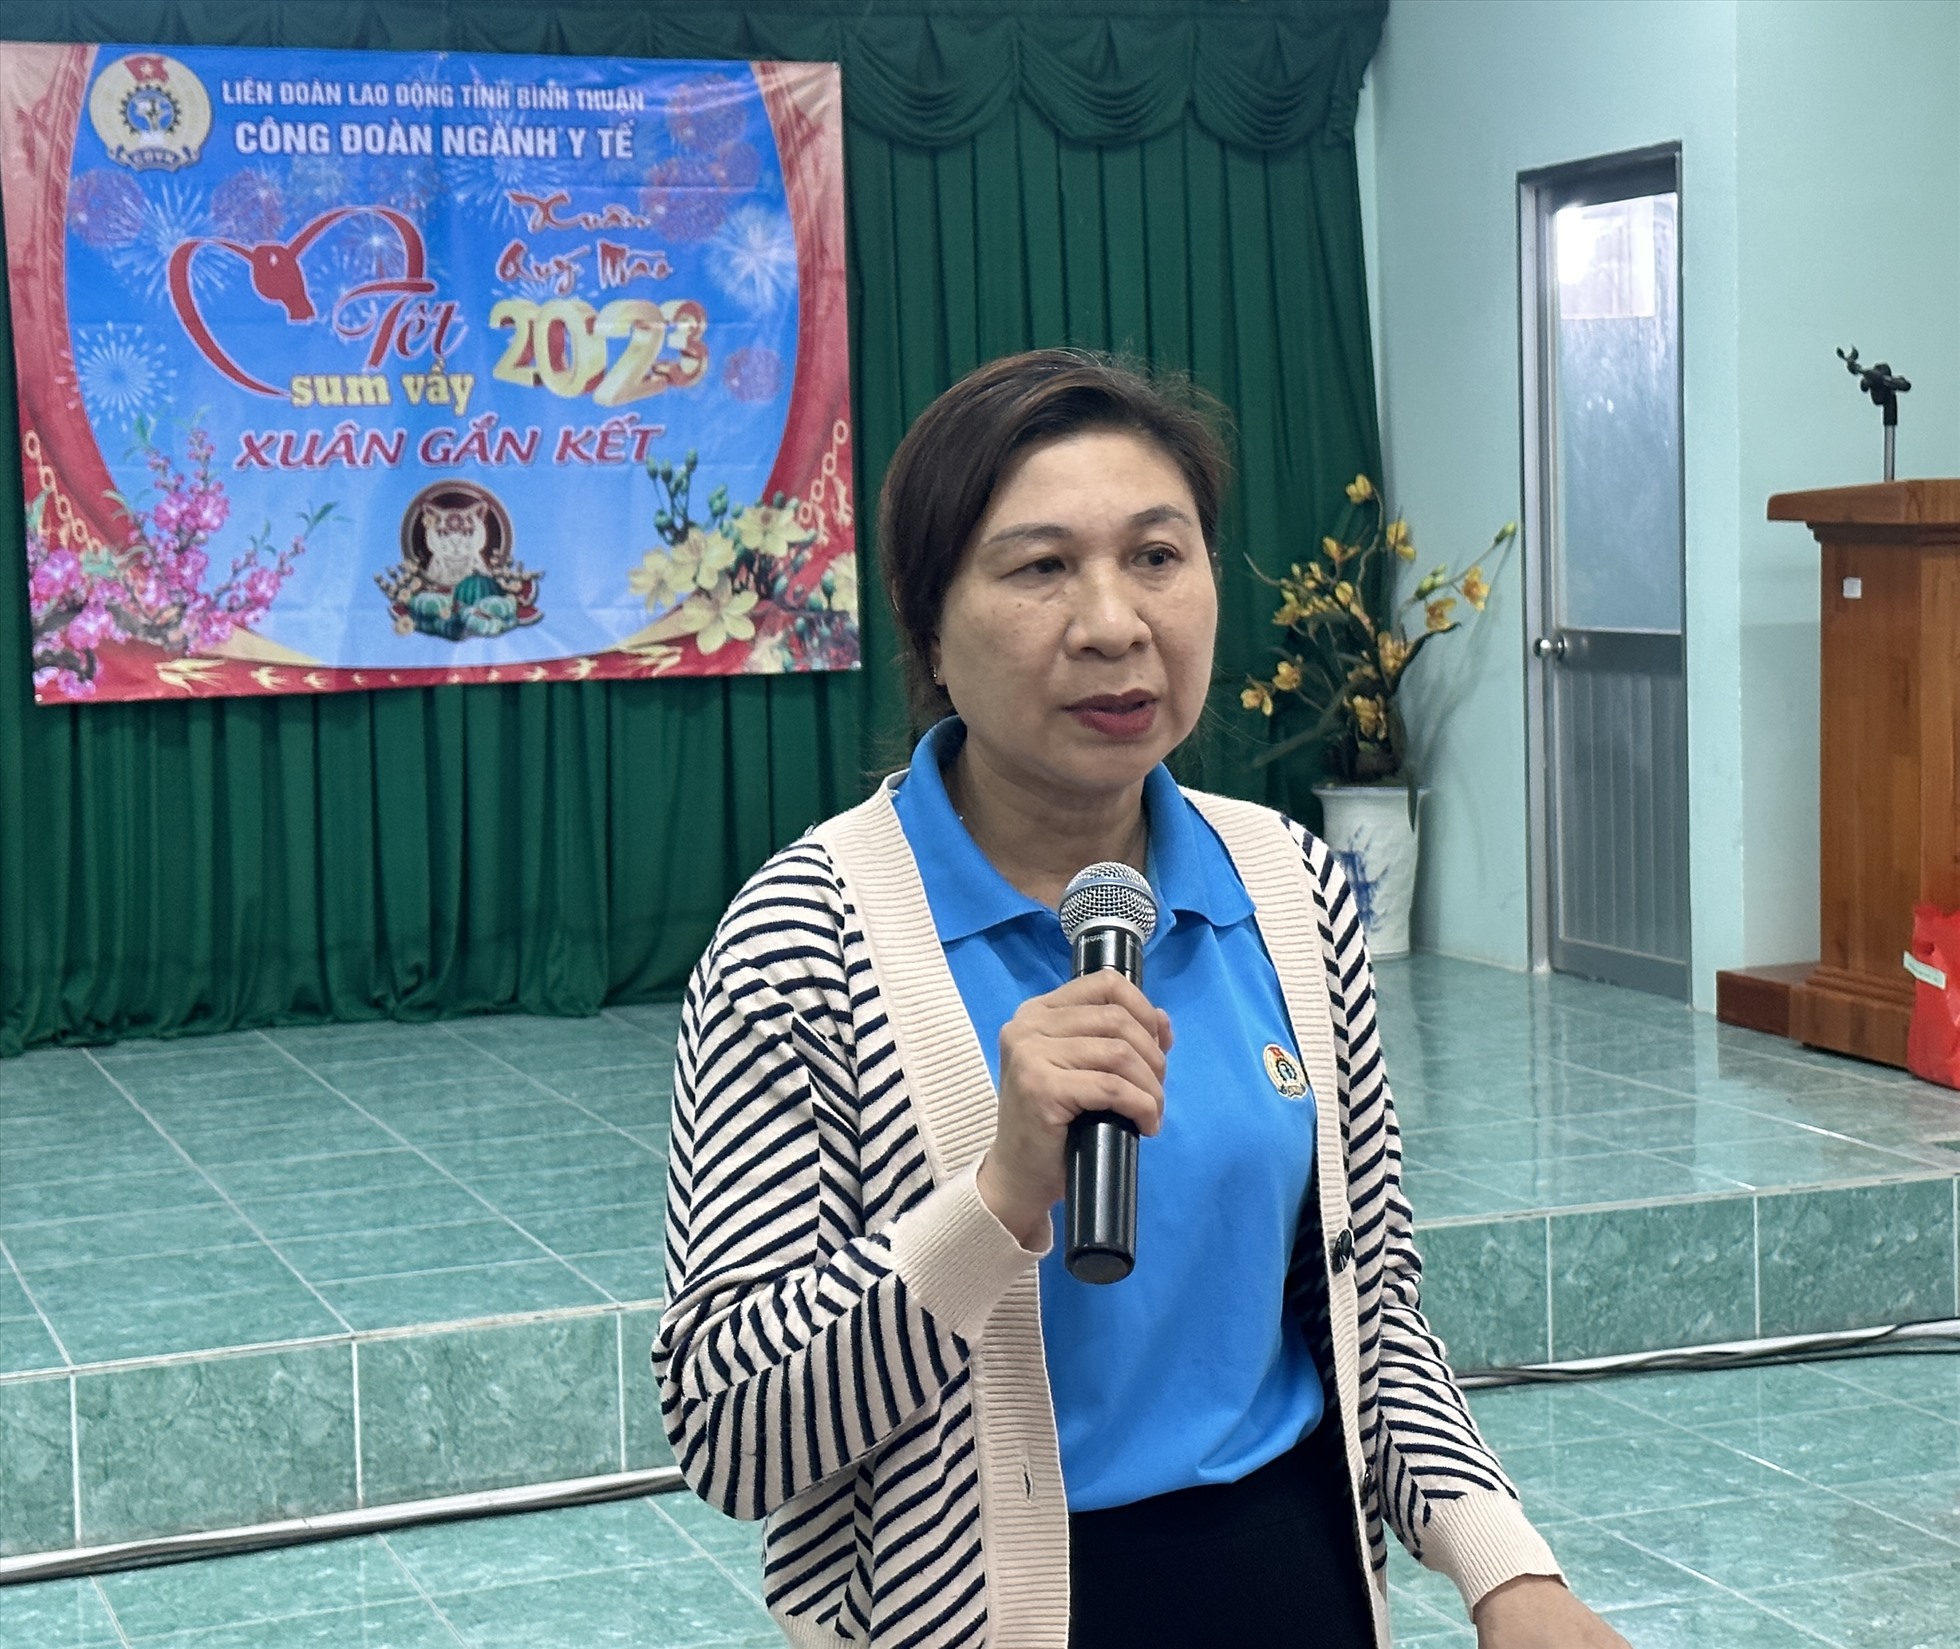 Bà Nguyễn Thị Xuân Loan, chủ tịch CĐN y tế Bình Thuận phát biểu chúc tết các đoàn viên. Ảnh: Duy Tuấn